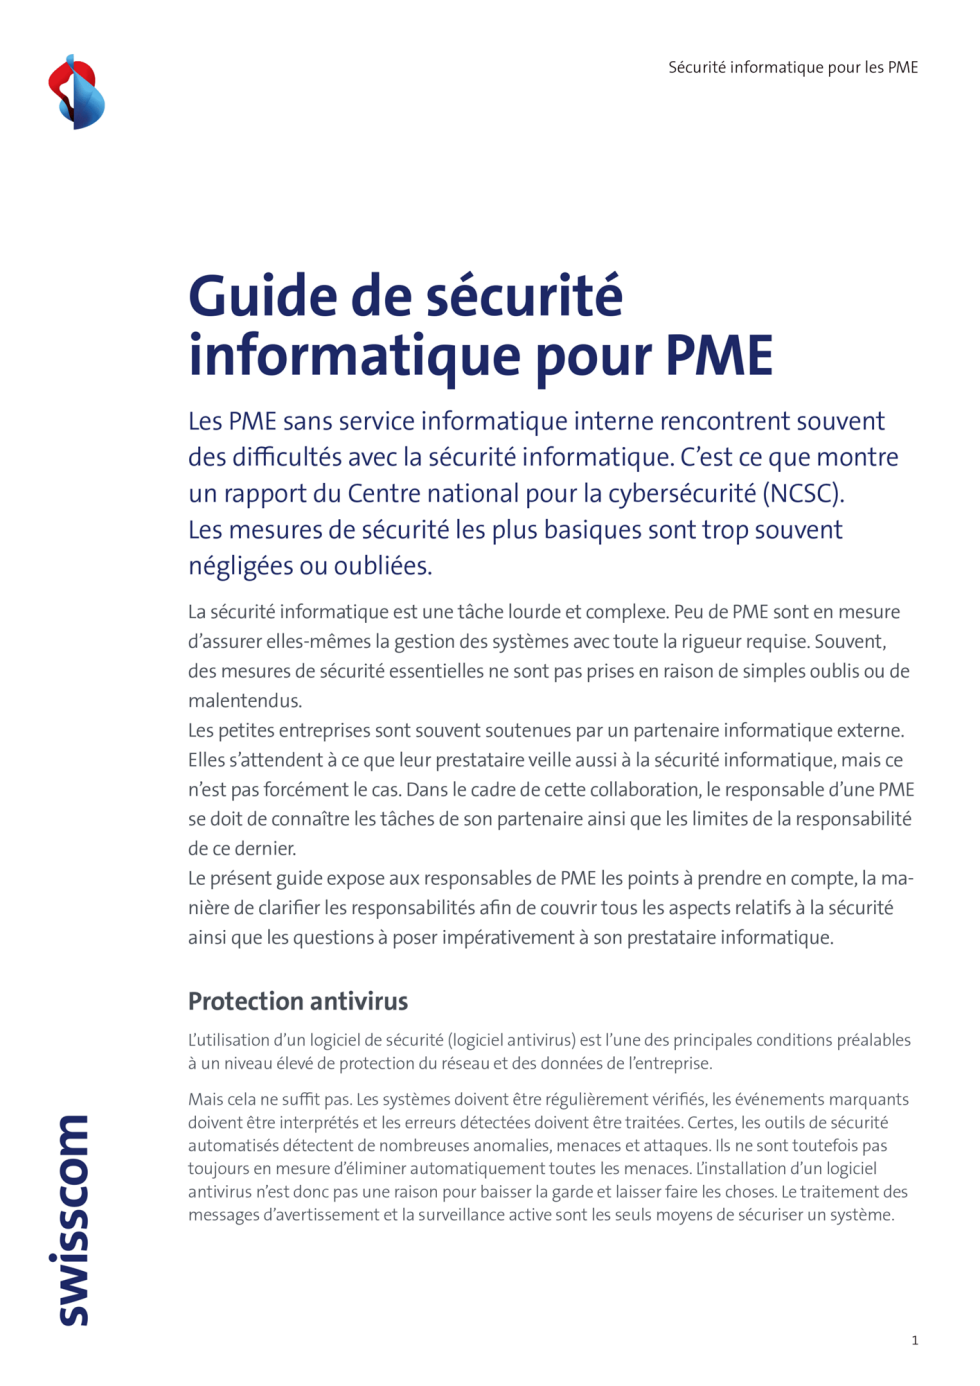 B2C-Swisscom-Guide-Securite-Informatique-PME-2020-FRA-v3.indd